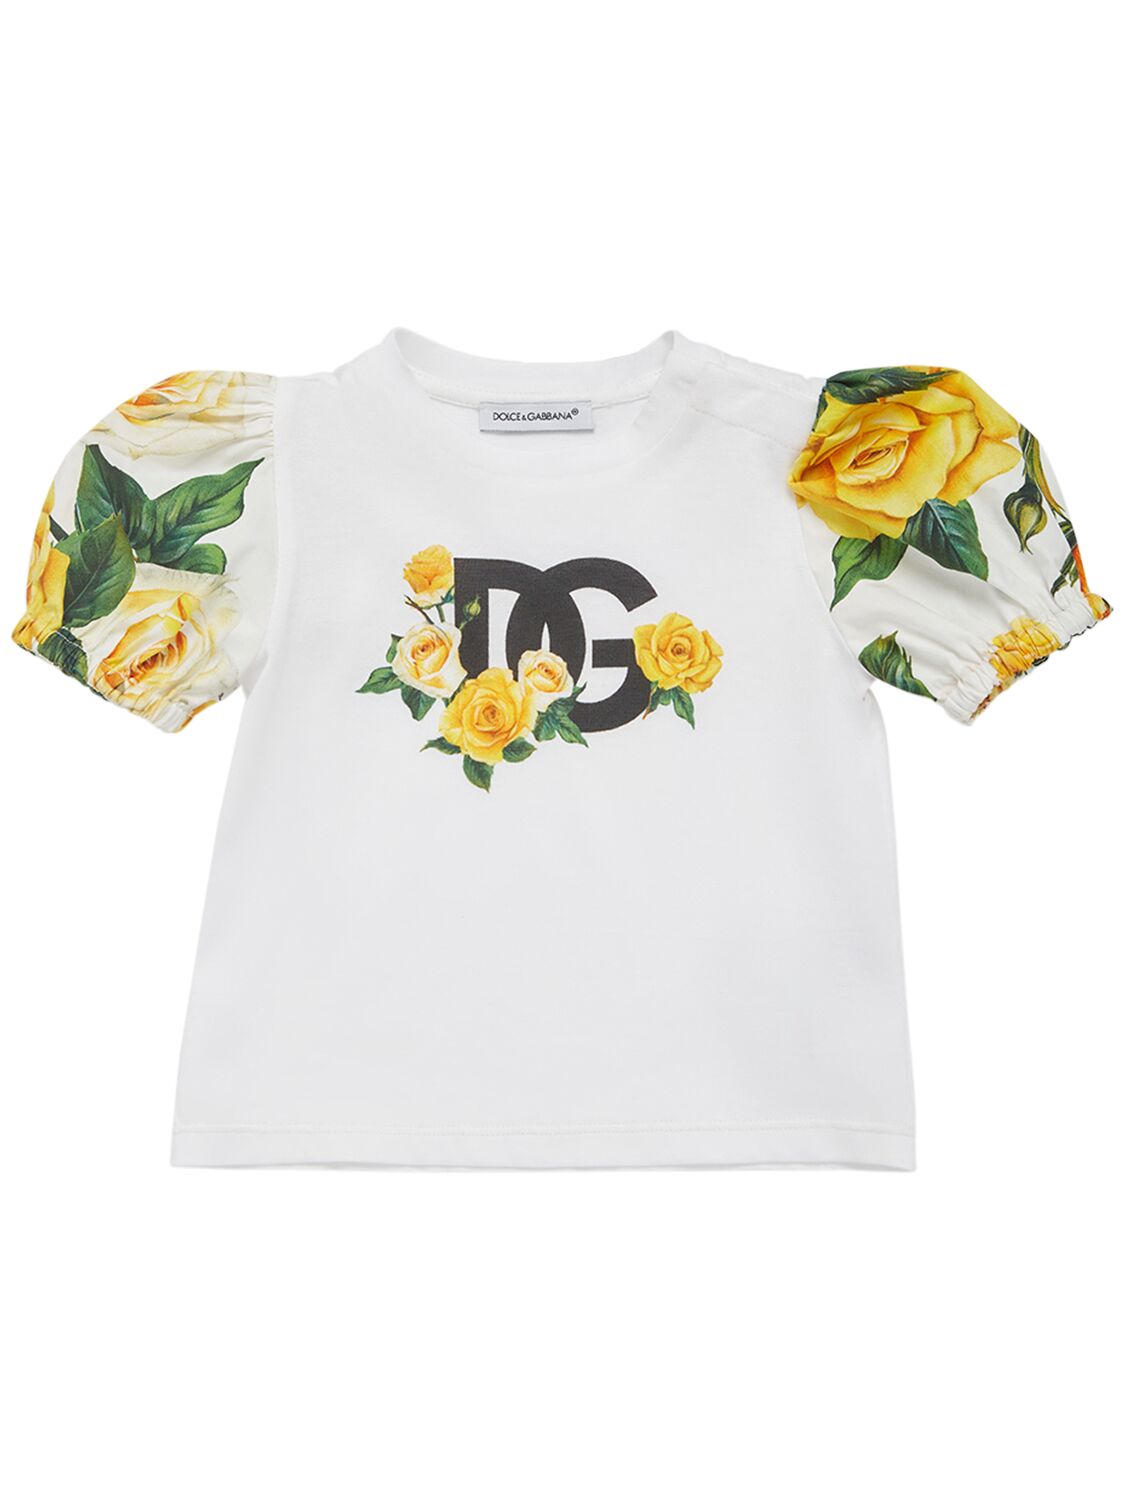 Dolce & Gabbana Kids' T-shirt Aus Baumwolle Mit Blumendruck In Weiss,gelb